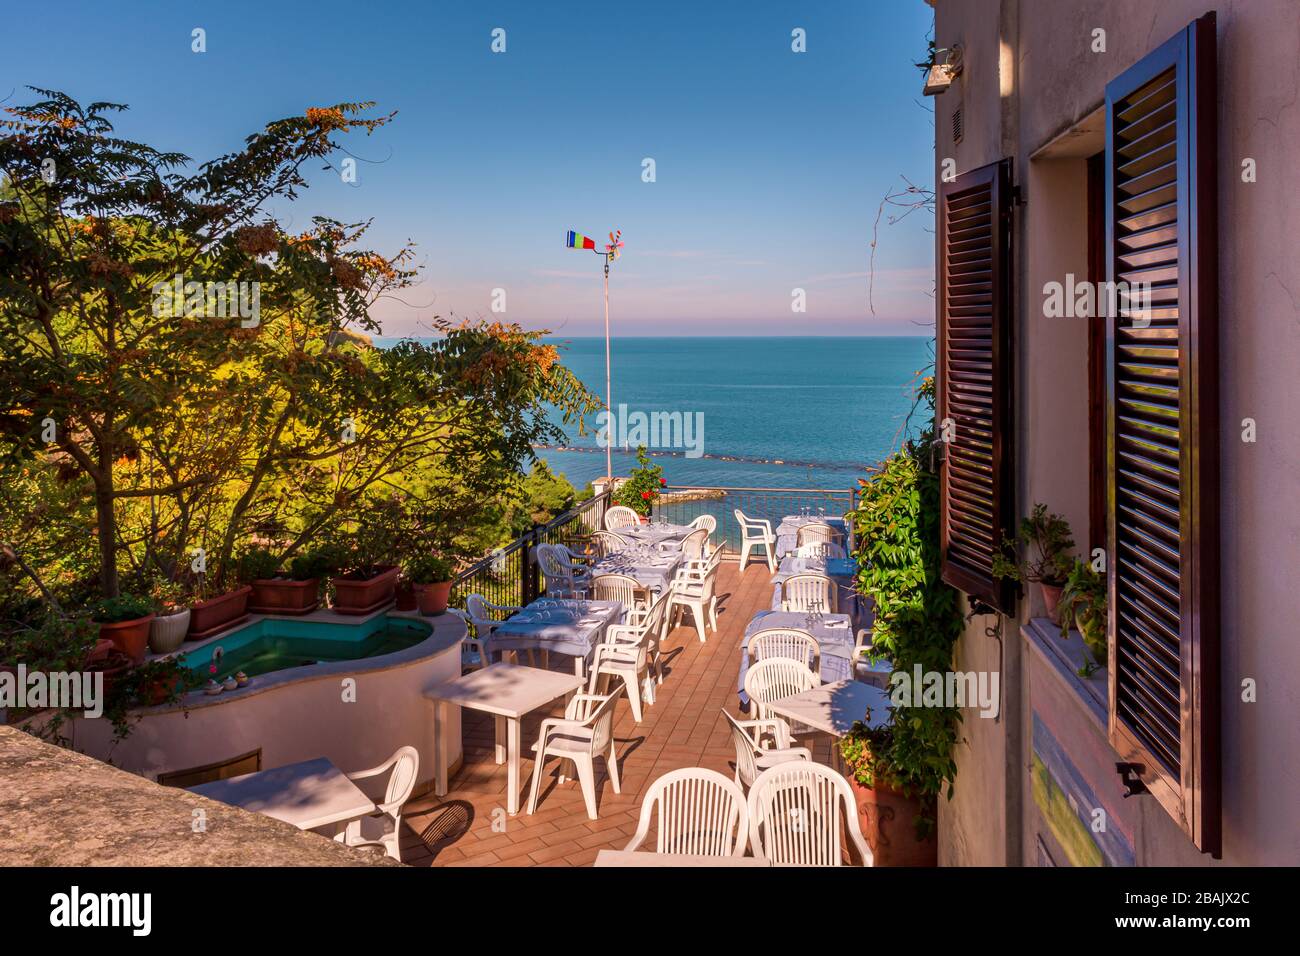 Un restaurant ensoleillé terrasse extérieure donnant sur la mer Adriatique sur la Riviera italienne, Numana, Marche, Italie Banque D'Images